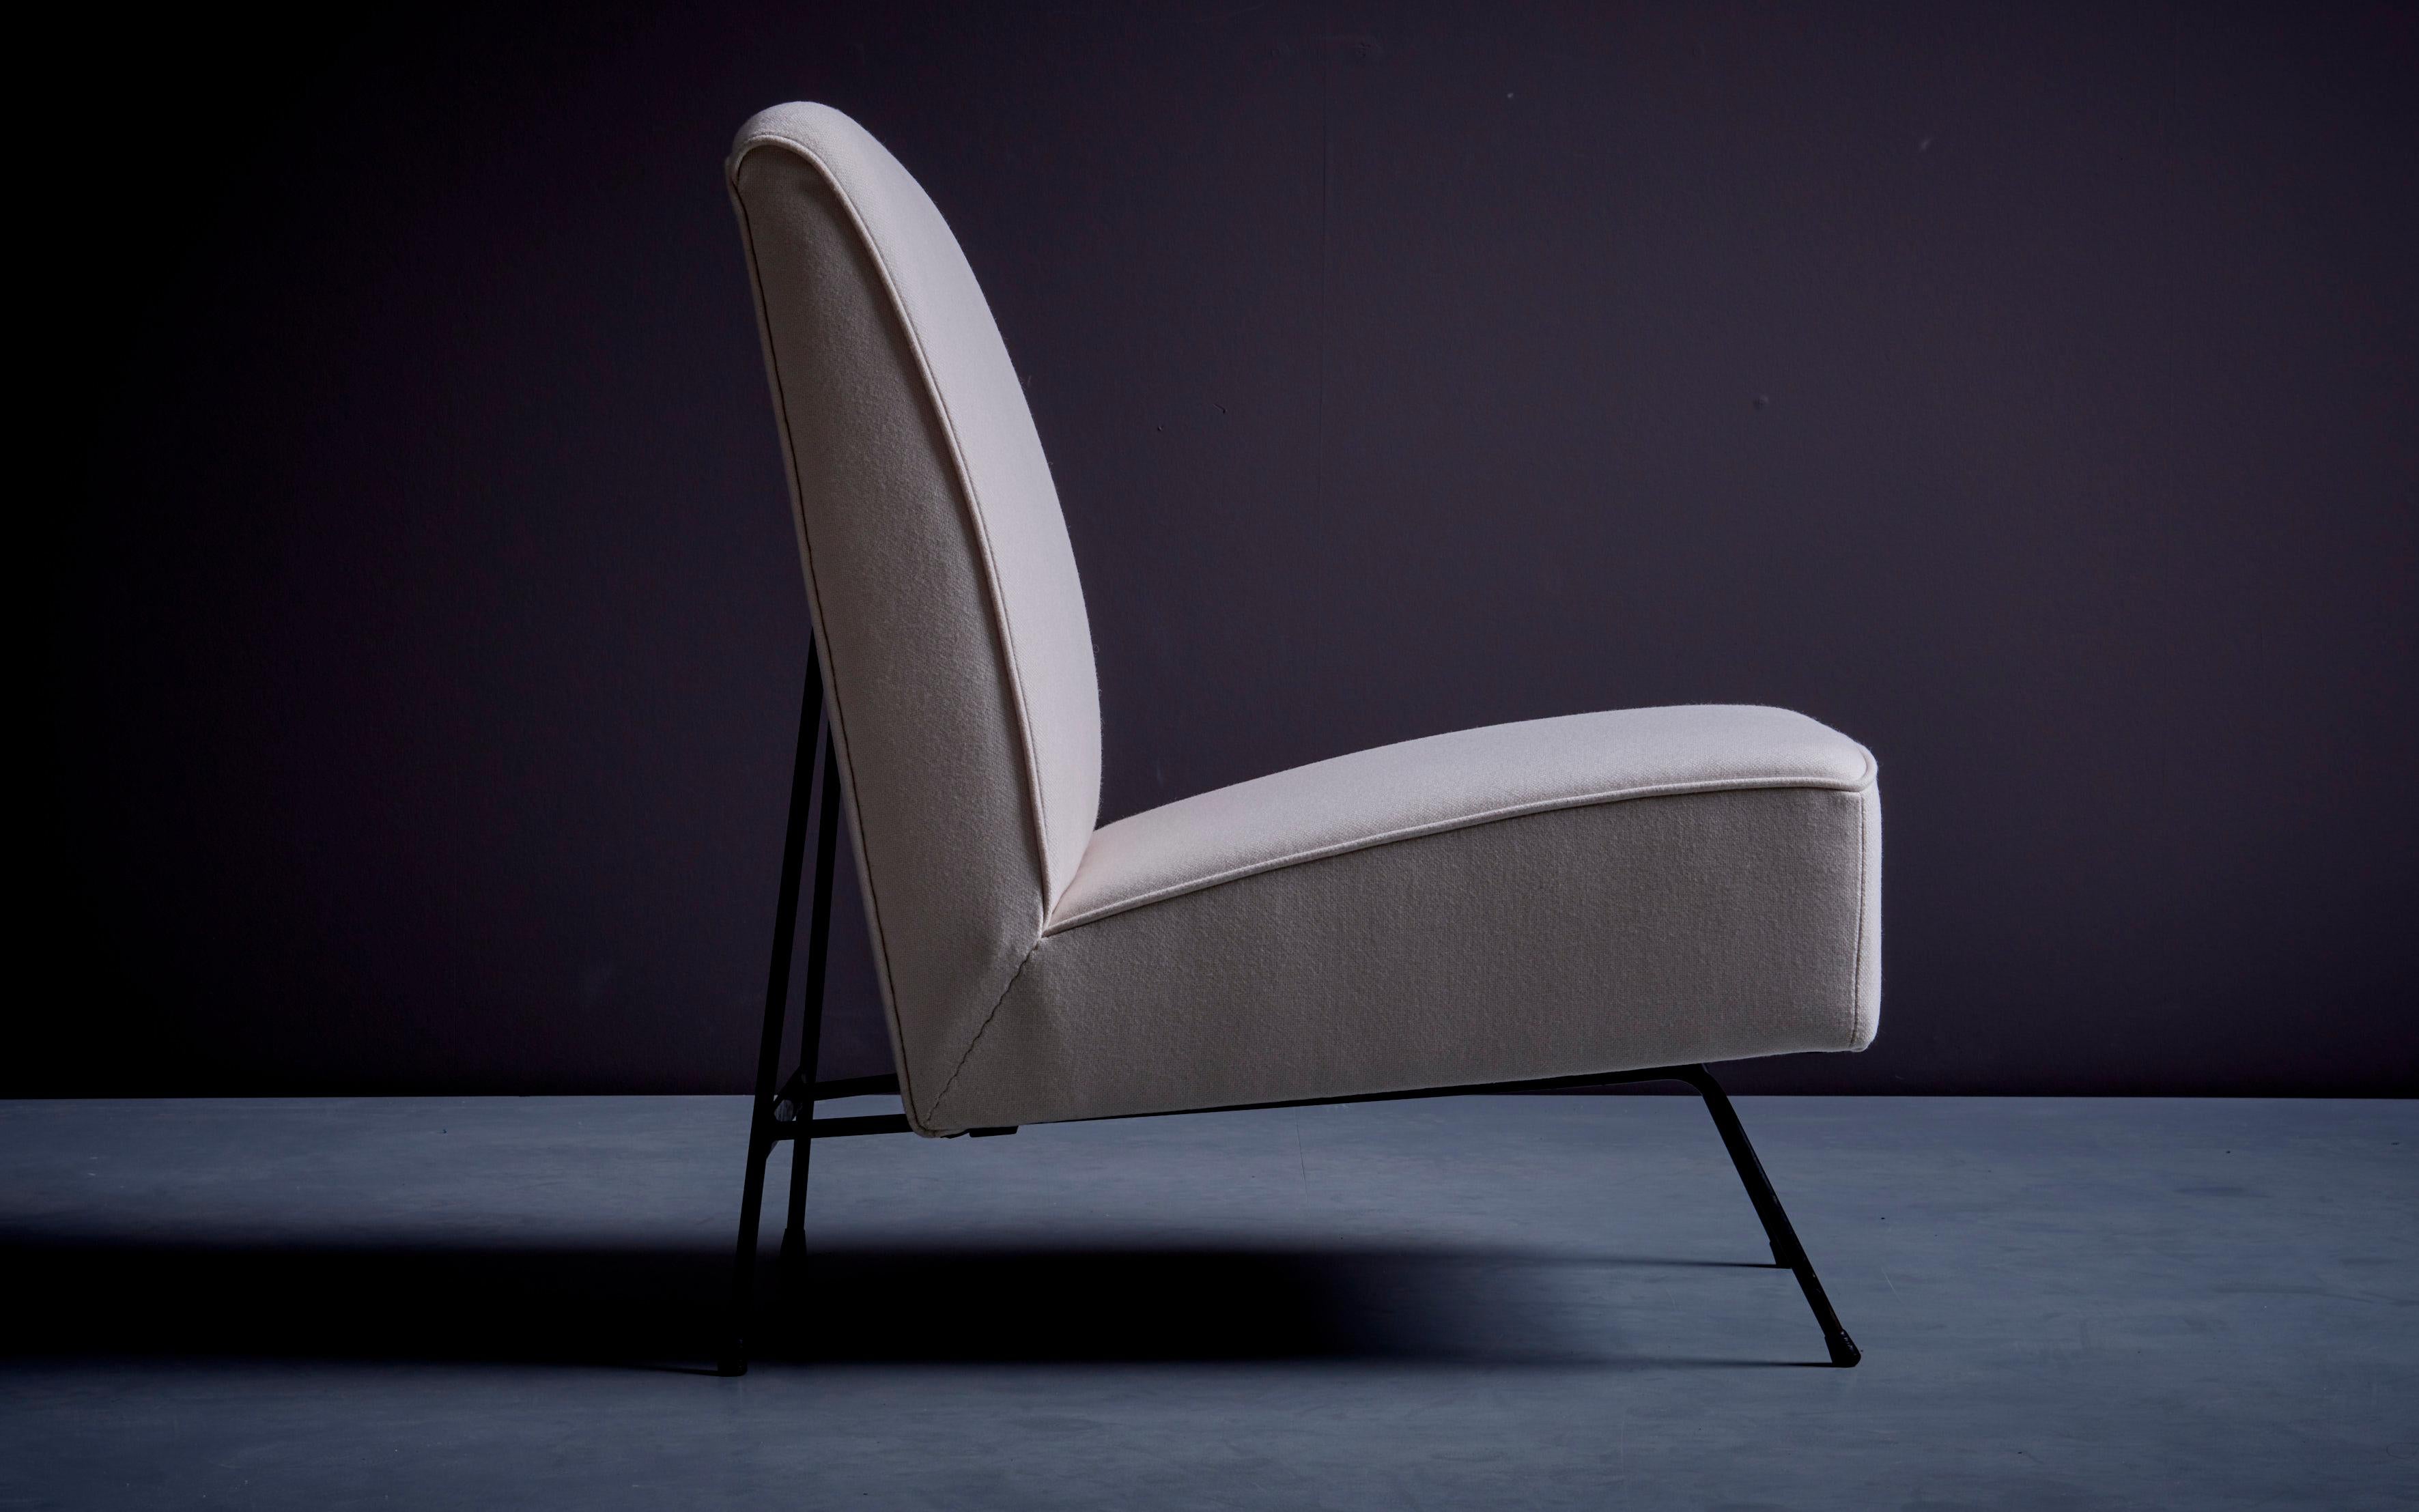 Sessel von Franchioni Mario für Frama, Italien 1950er Jahre.
Dieser Stuhl ist komplett mit Dedar-Stoff restauriert. Alle Federn im Inneren sind neu. Ausgezeichneter Zustand und signiert.